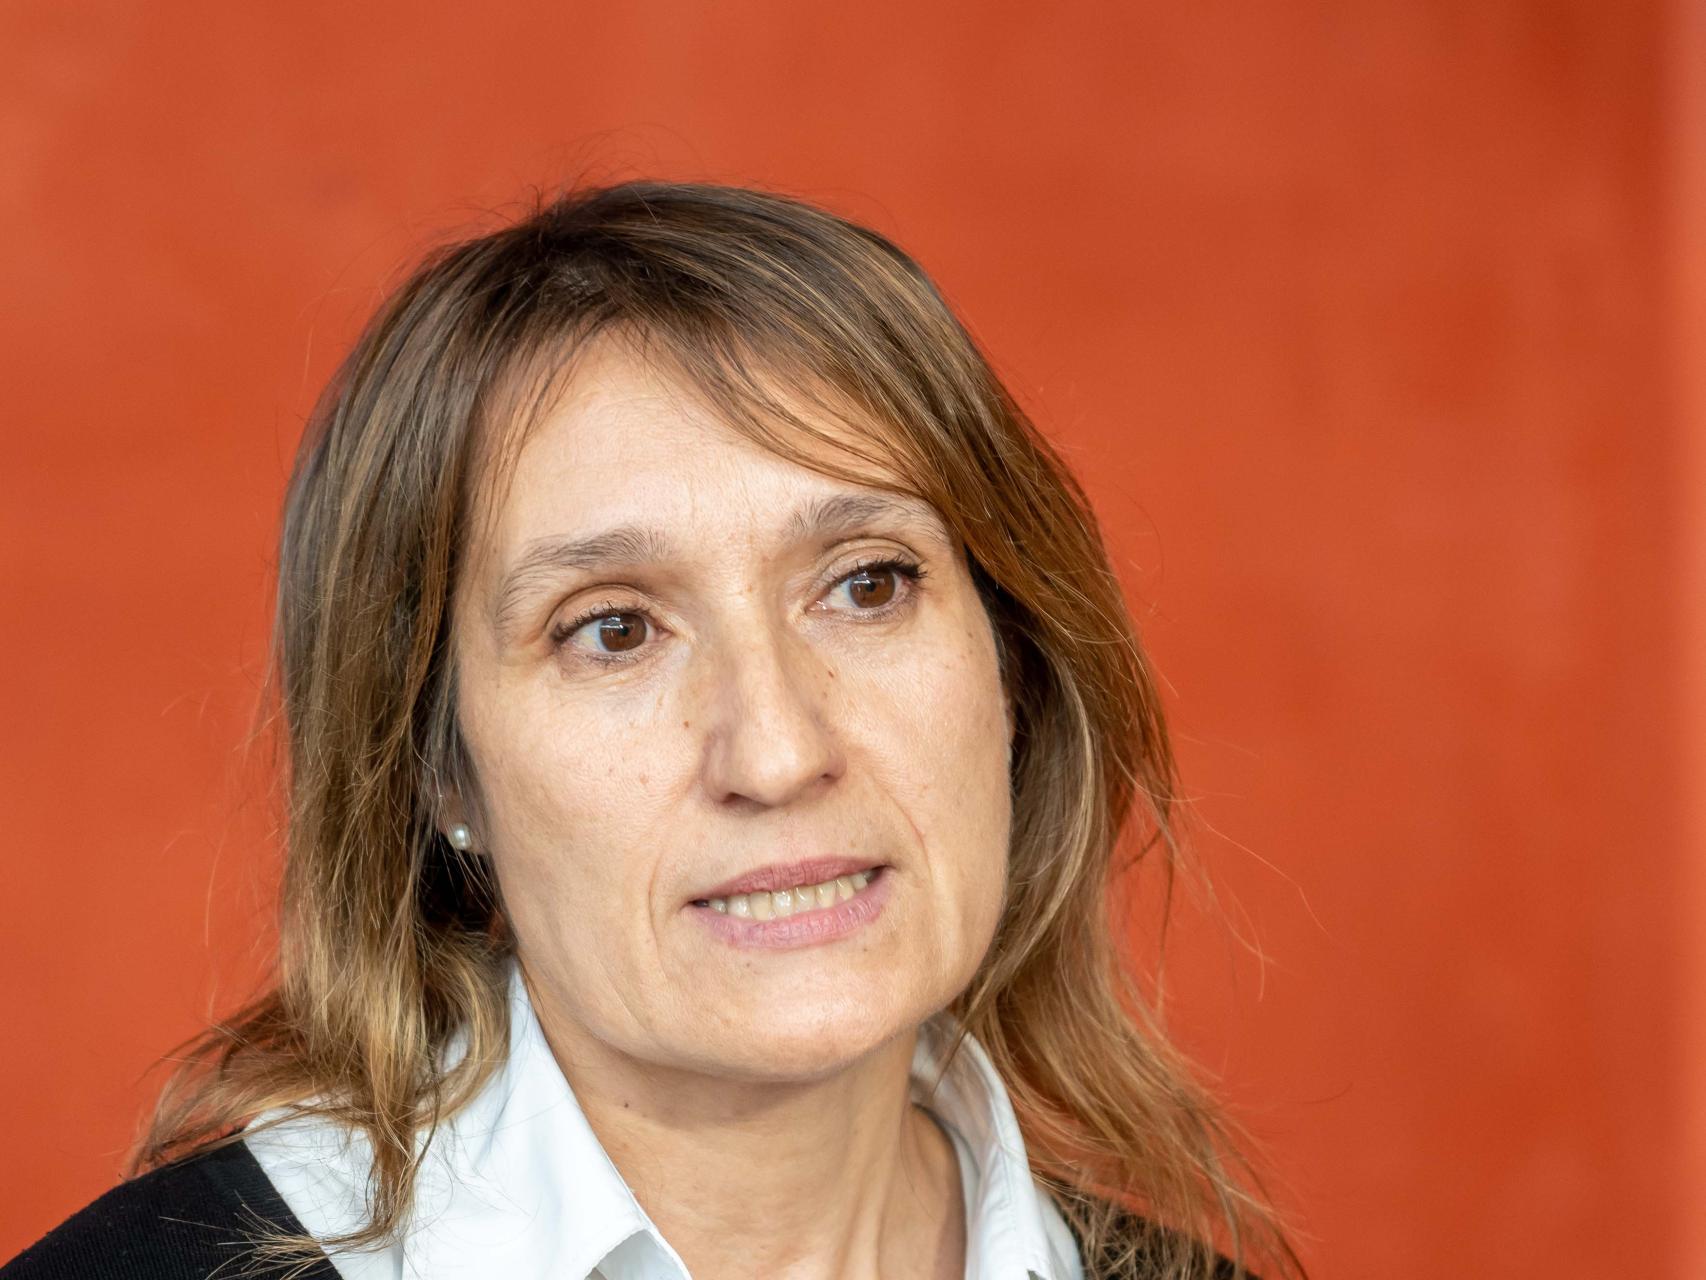 La consejera de Educación, Rocío Lucas, durante la clausura el acto de presentación del curso 2022-2023 de la Escuela Superior de Arte Dramático de Castilla y León, este miércoles.